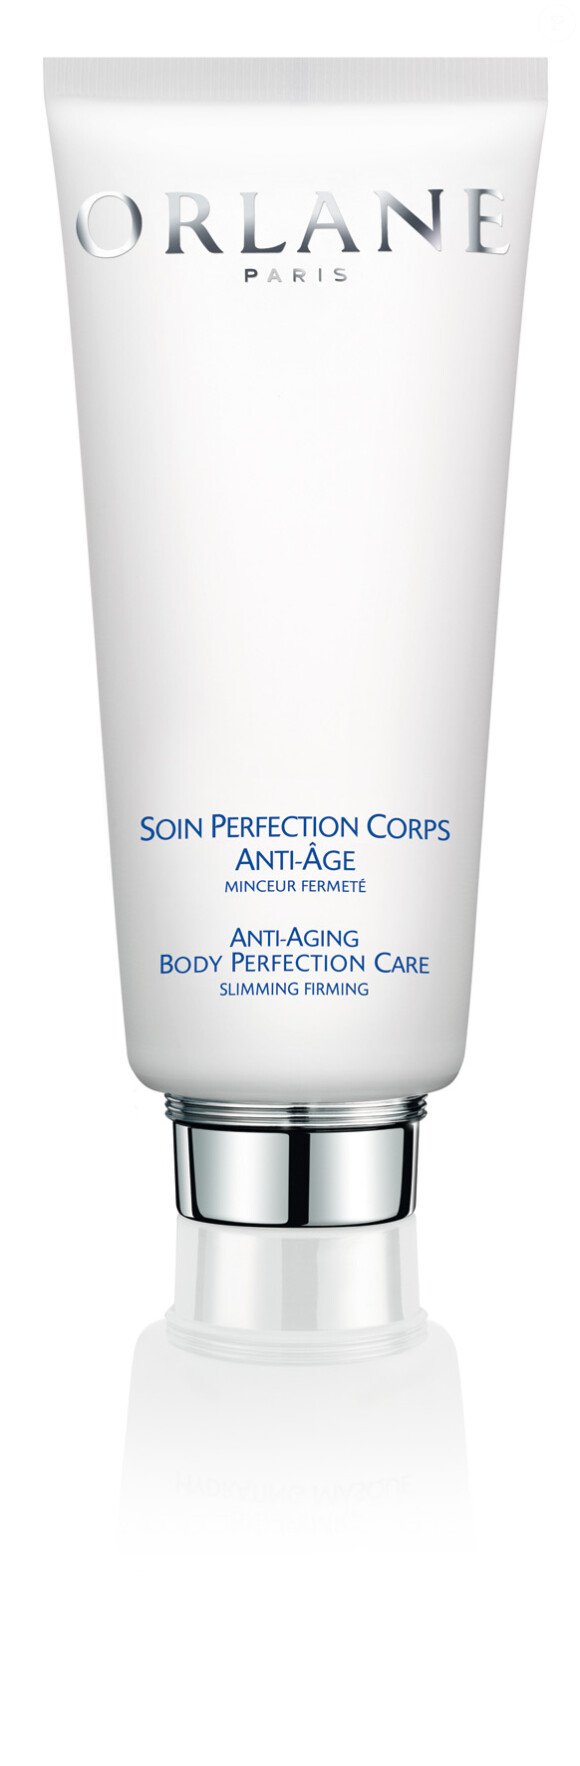 Le Soin Perfection Corps Anti-âge d'Orlane agit sur le vieillissement cutané, idéal pour retrouver une peau ferme et tendue. 87 euros le tube de 200 ml.